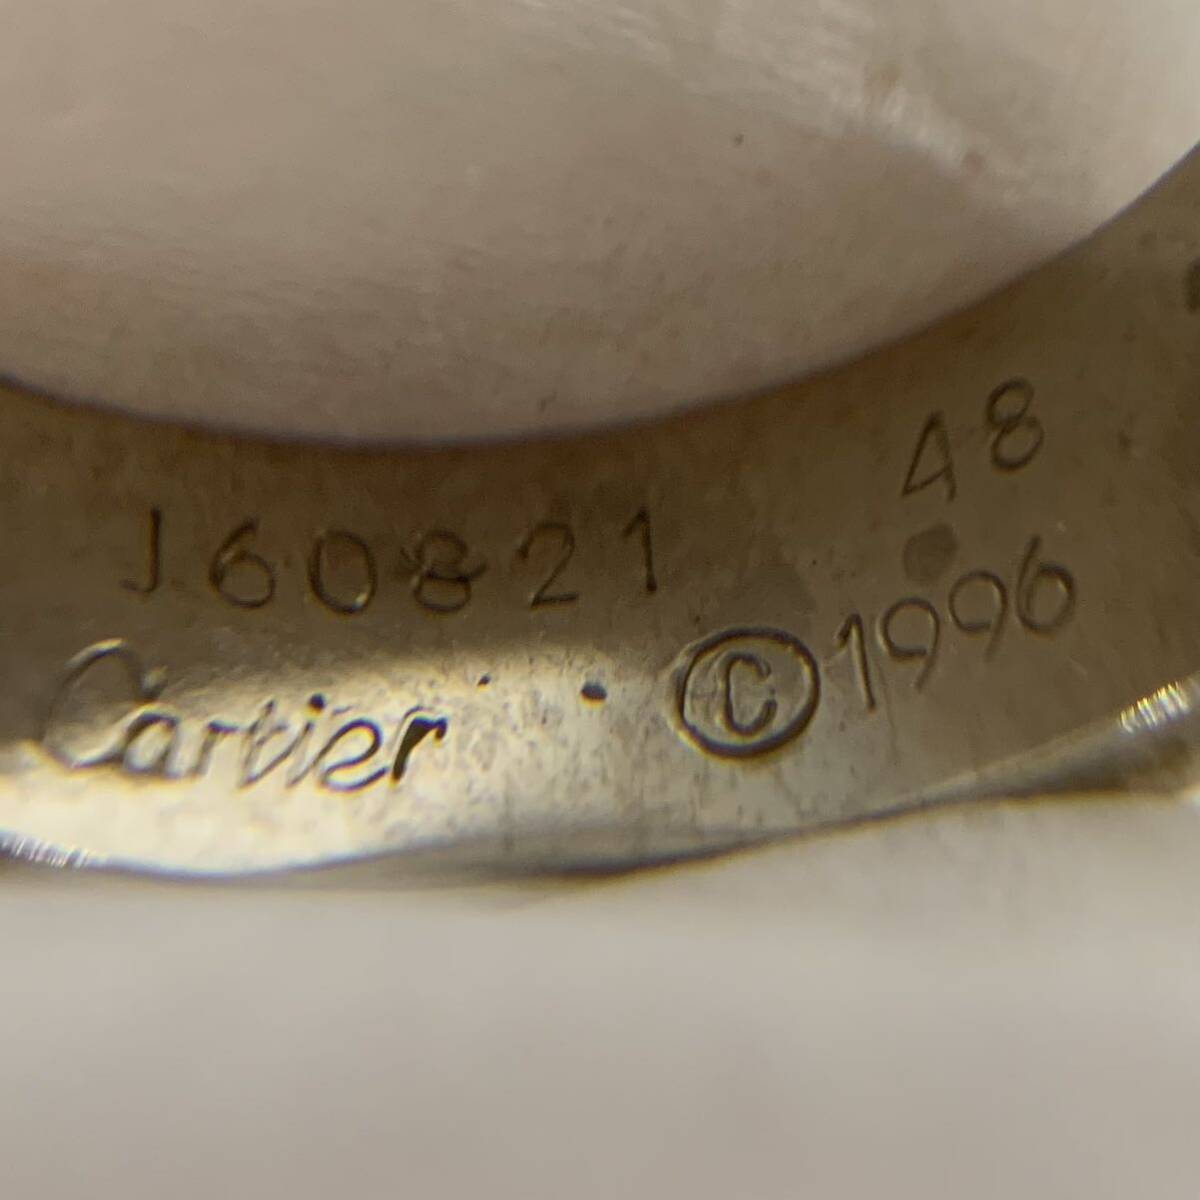 Cartier カルティエ リング 指輪 750 J60821 48 1996 日付イニシャル刻印あり アクセサリー 現状品 og_画像4